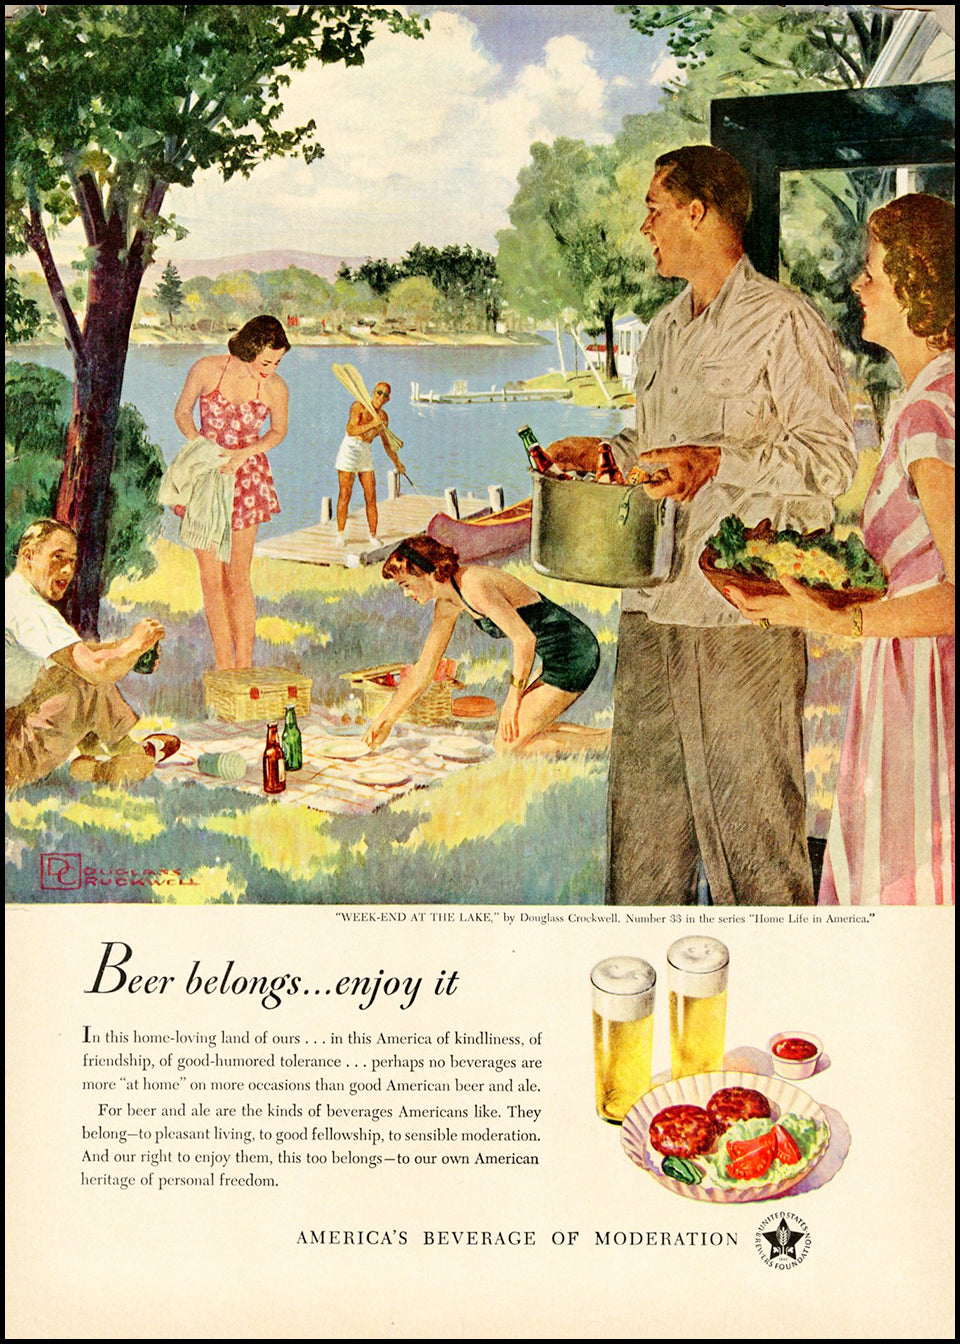 Original & Authentic Vintage Beer Ads at Adirondack Retro